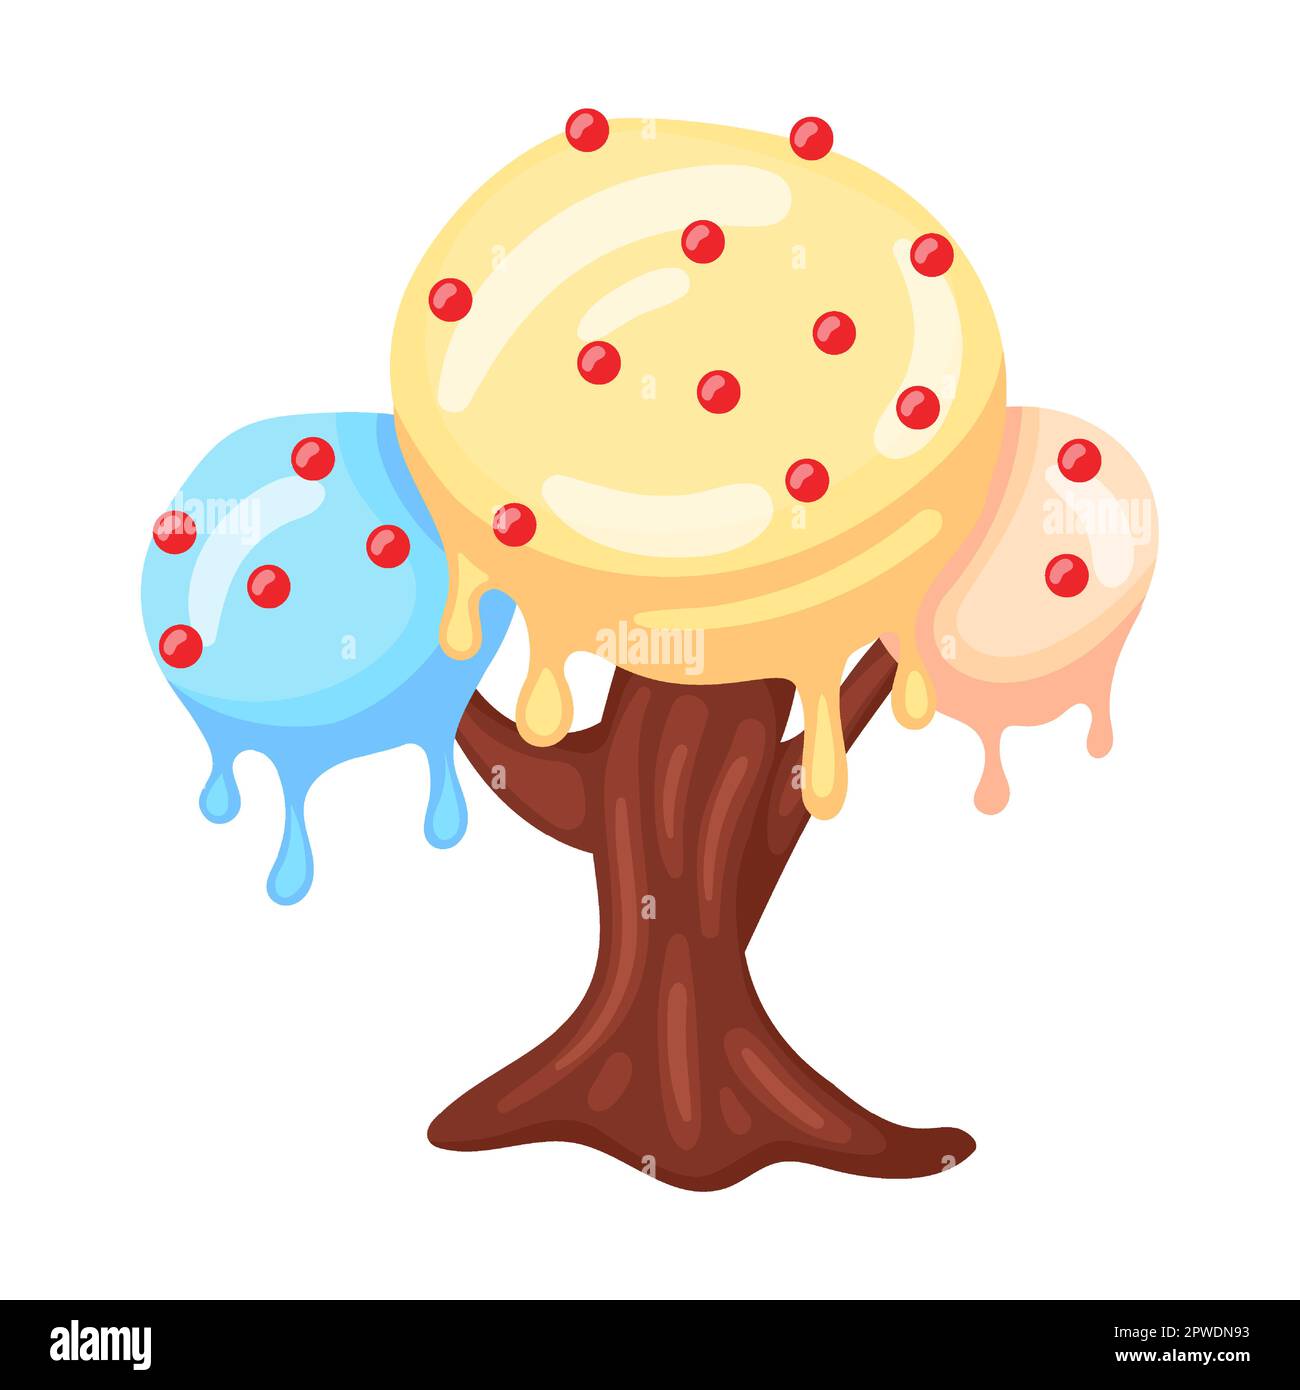 Candie in Form eines Baumes mit Kugeln kalter Eiscreme, Vektorbild. Fantasy Land Karamell und Schokolade Desserts, Cupcakes, Kekse Stock Vektor